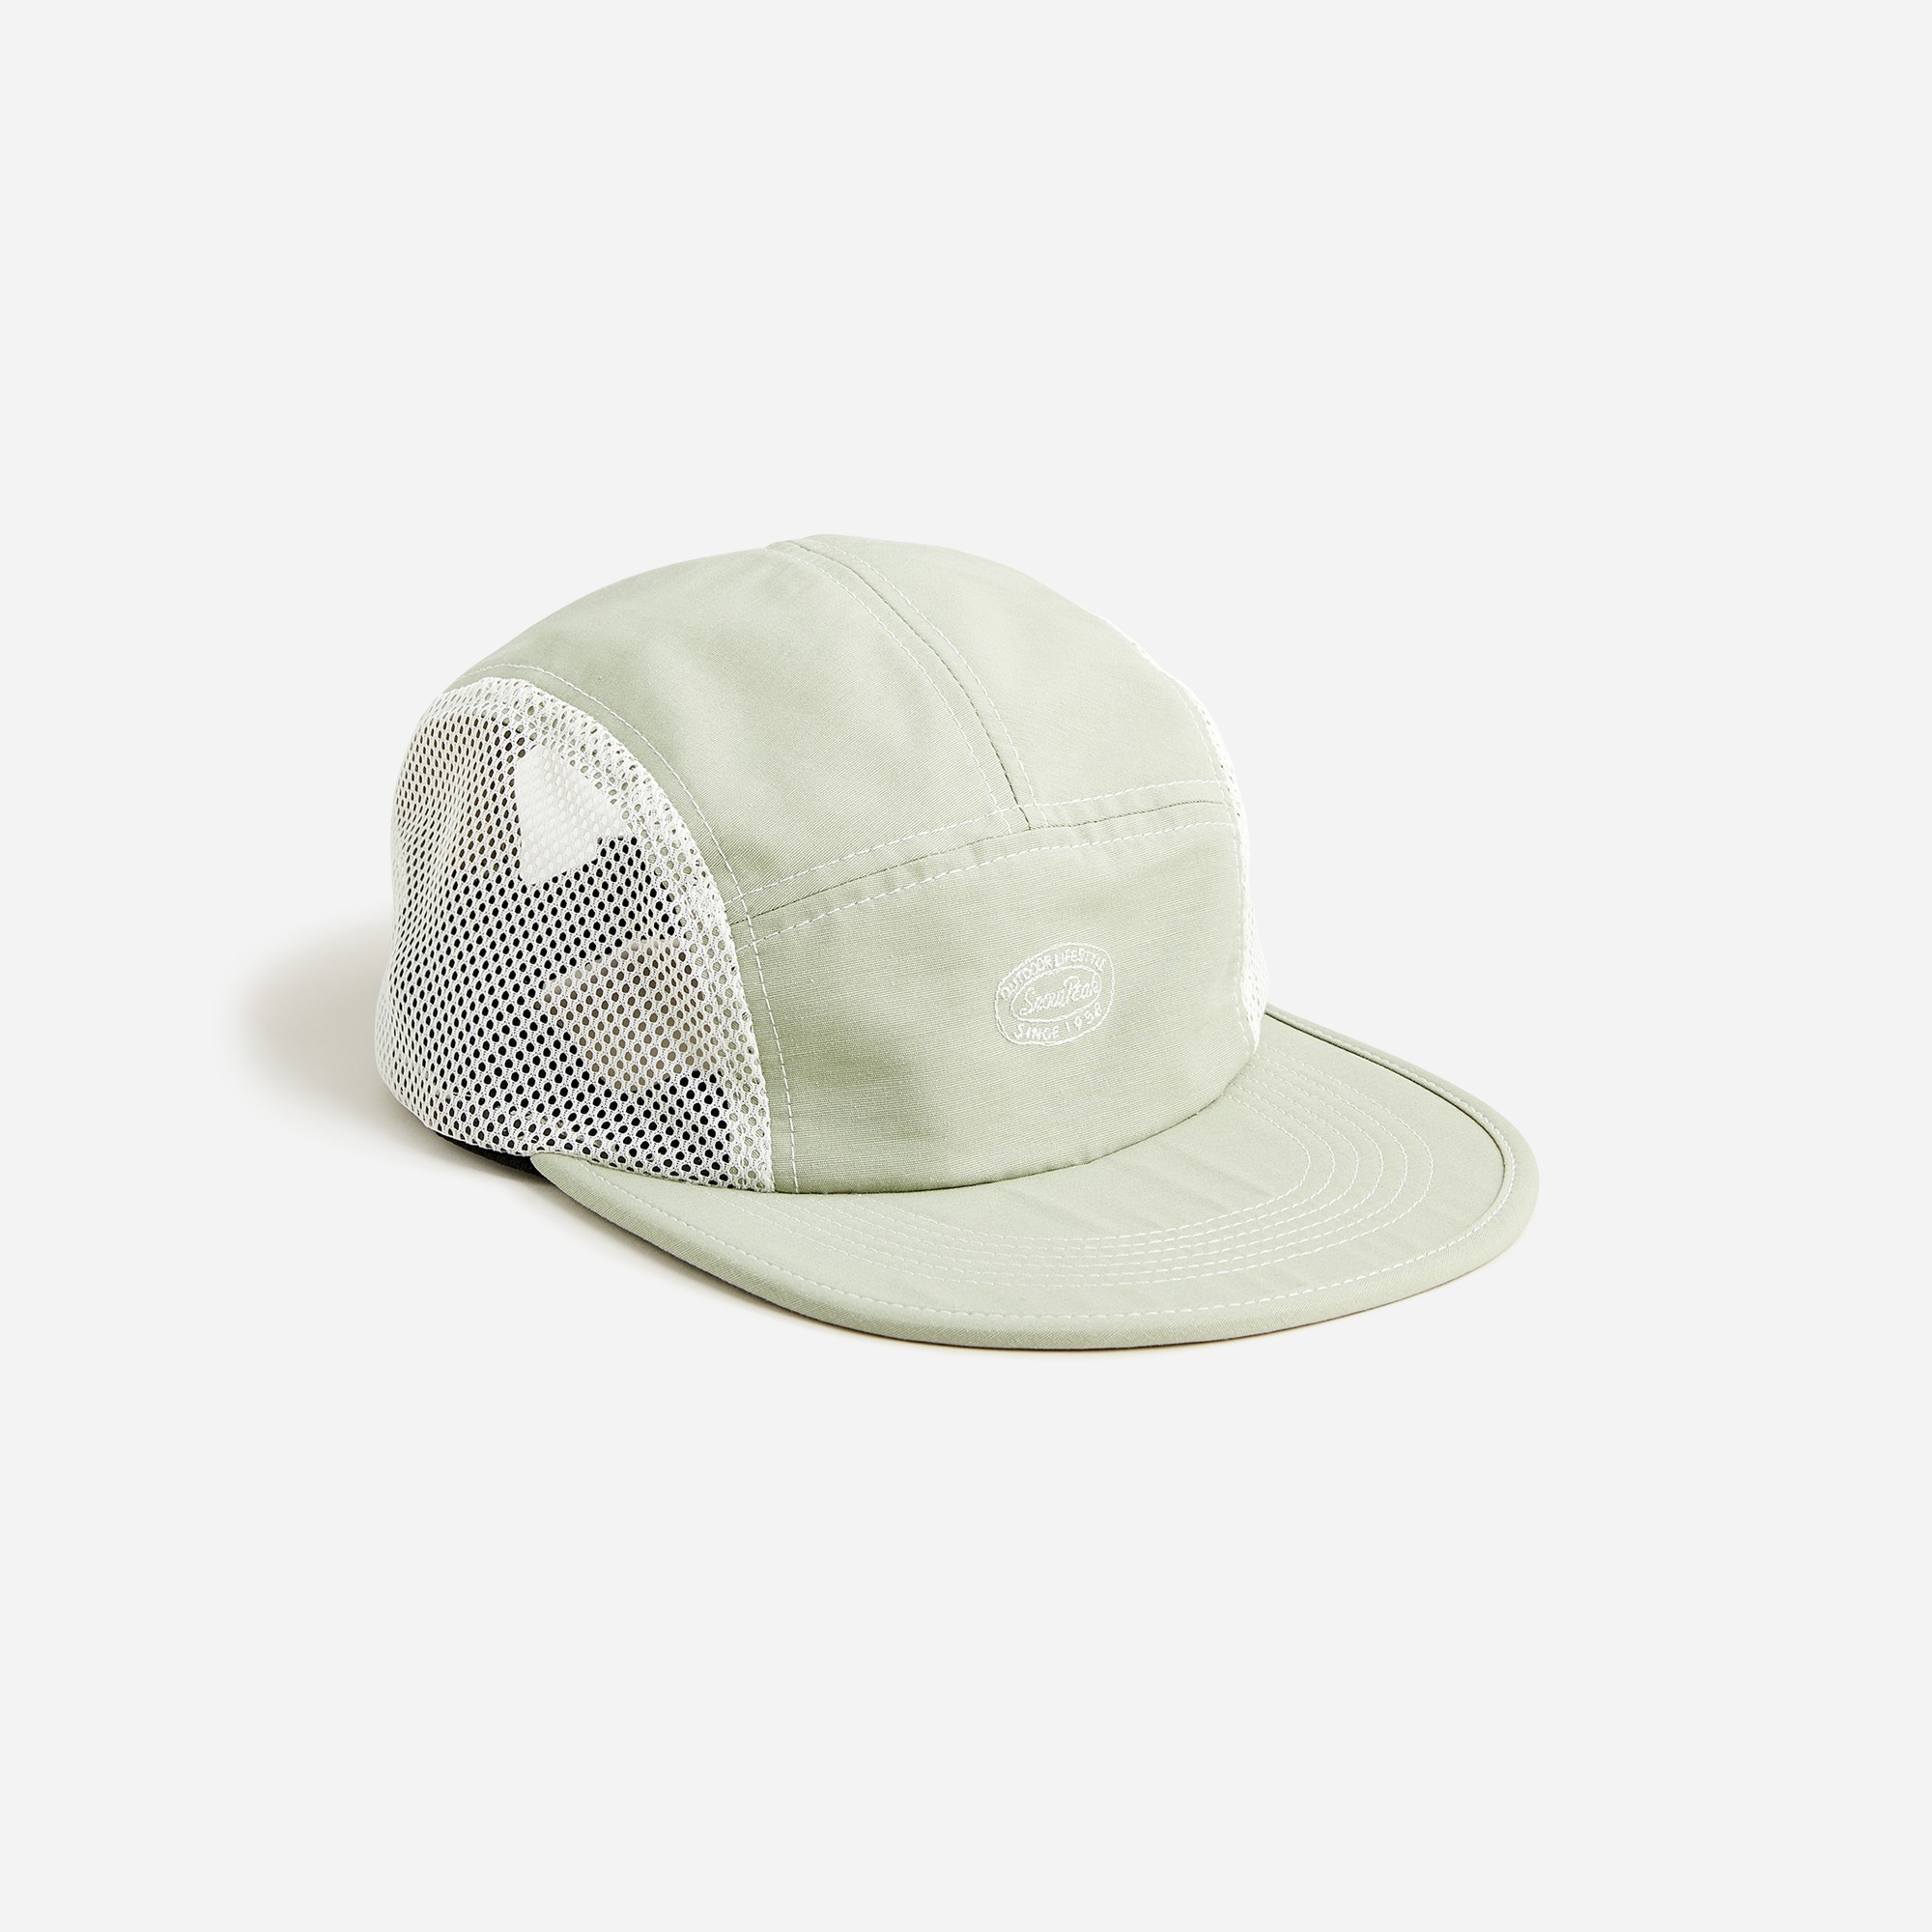  Snow Peak® mountain cloth cap